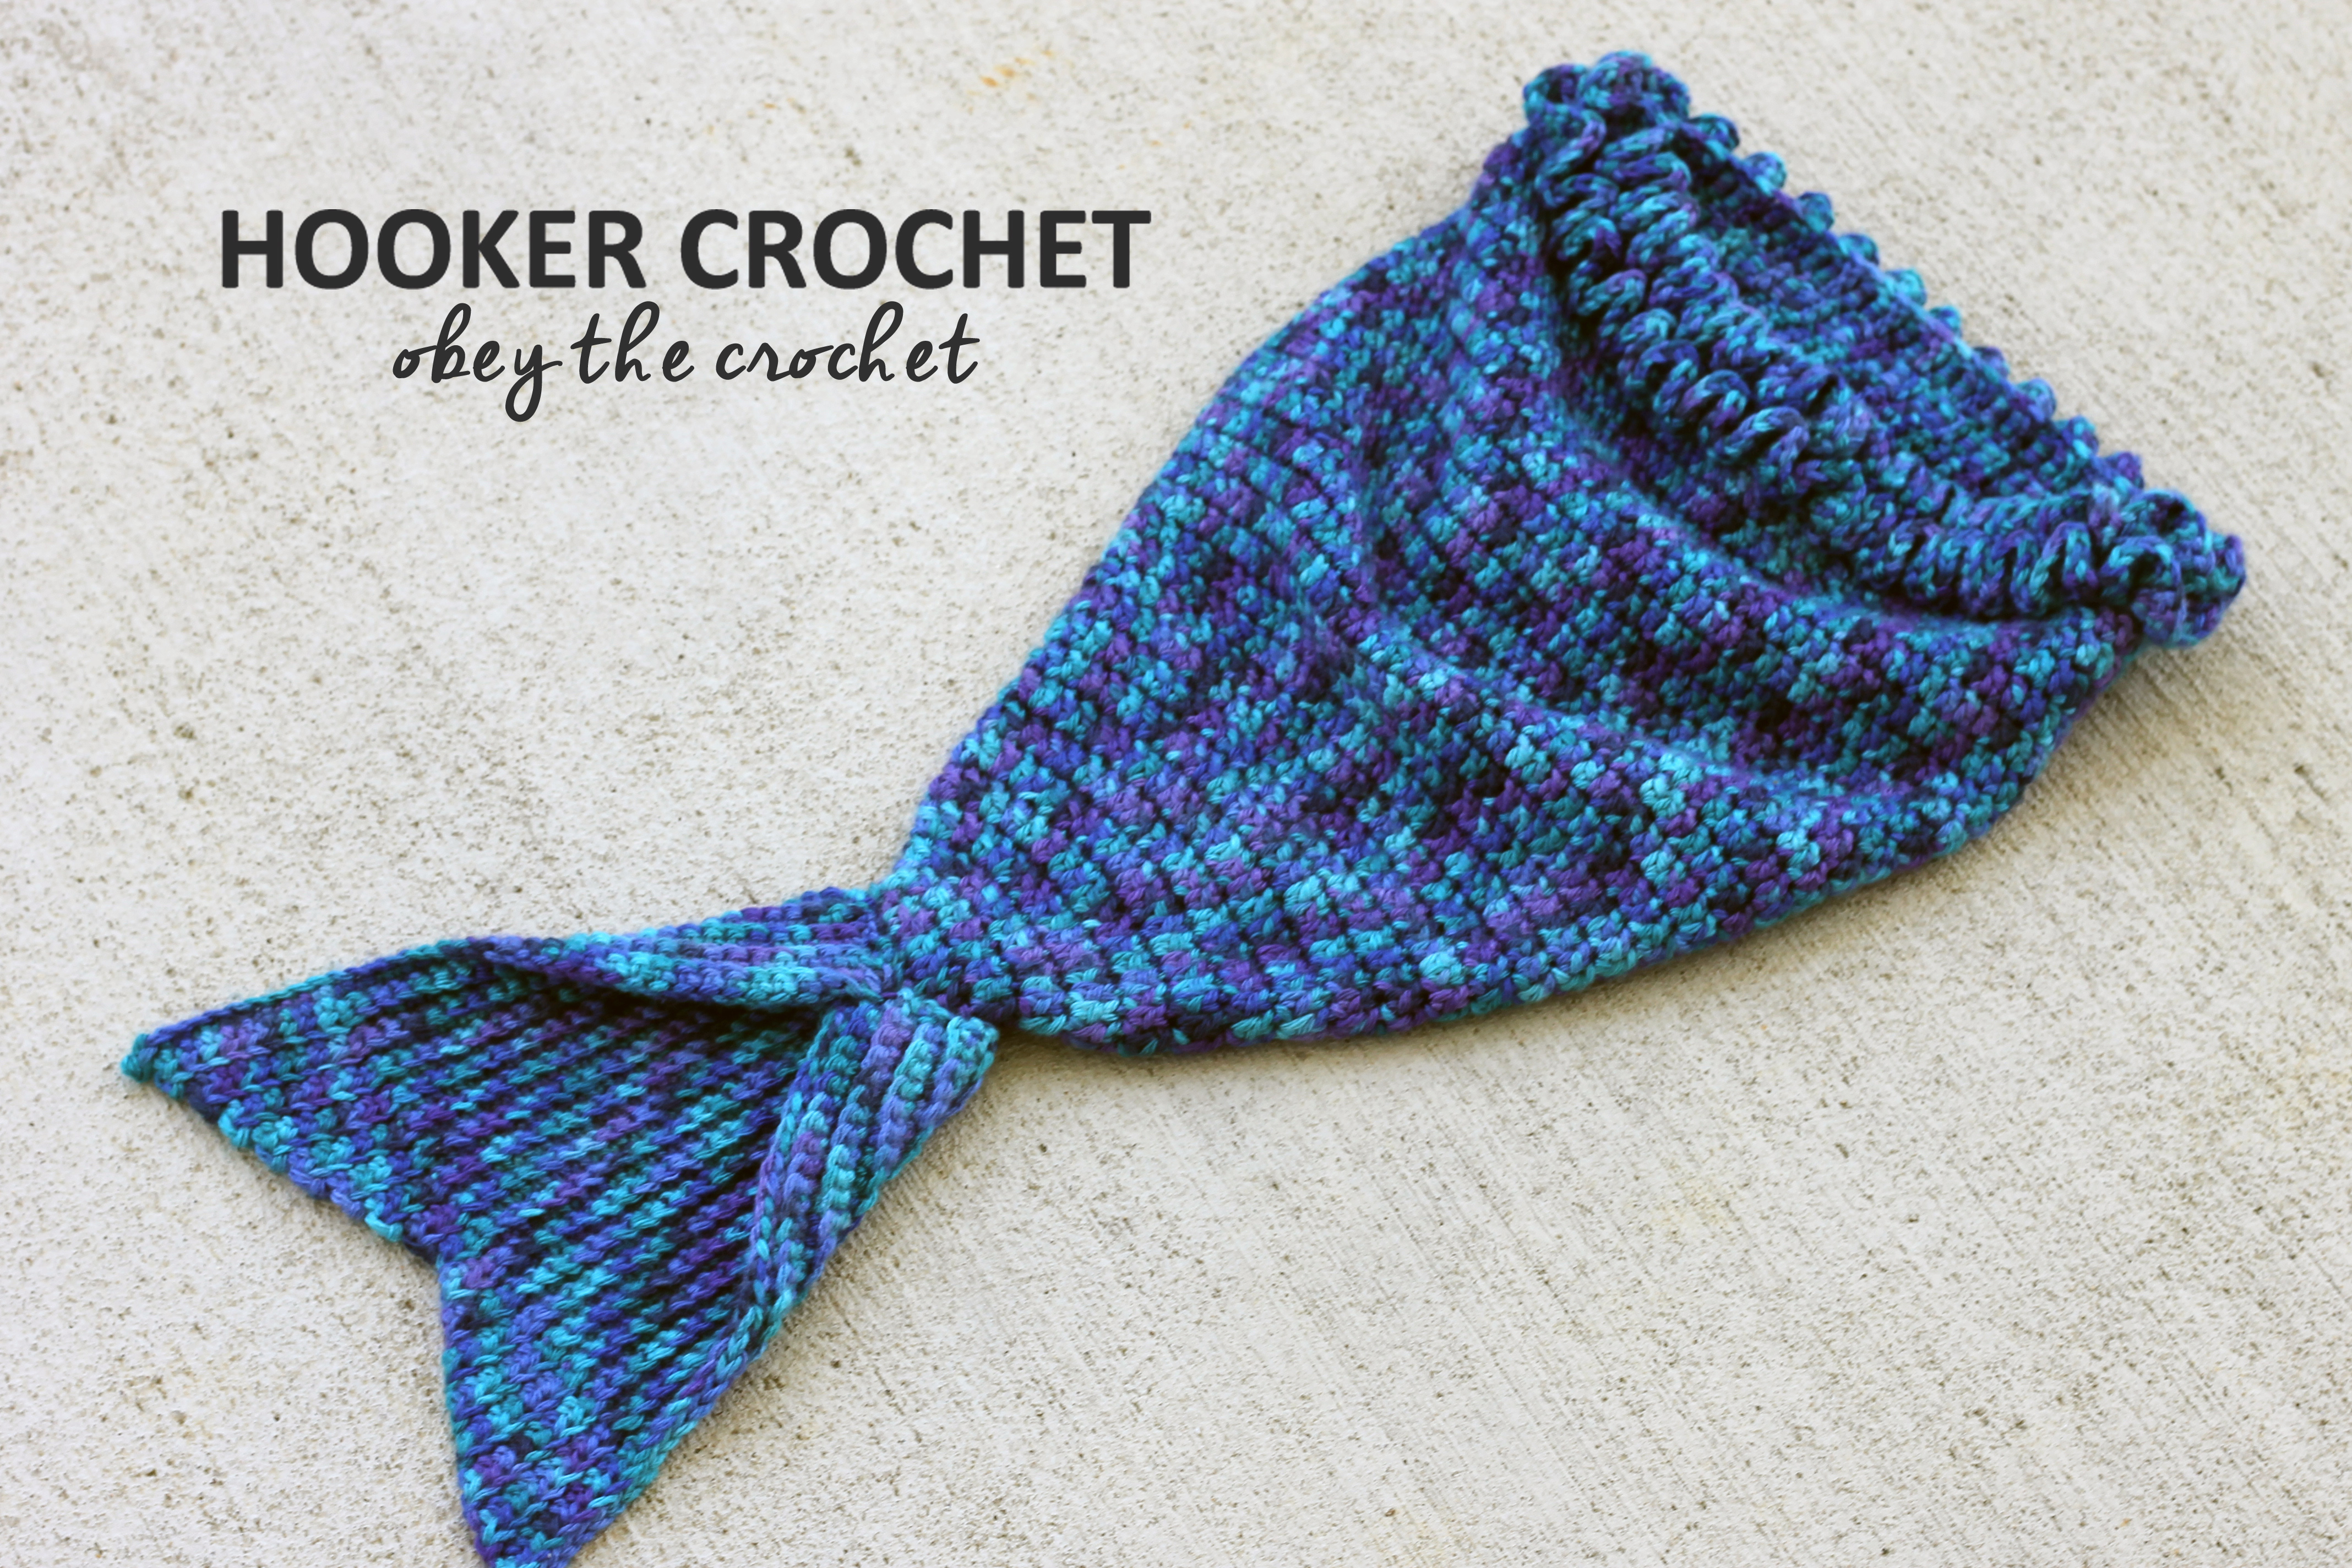 Caron Simply Soft Crochet Patterns Mystic Mermaid Cocoon Free Crochet Pattern In Post Hooker Crochet